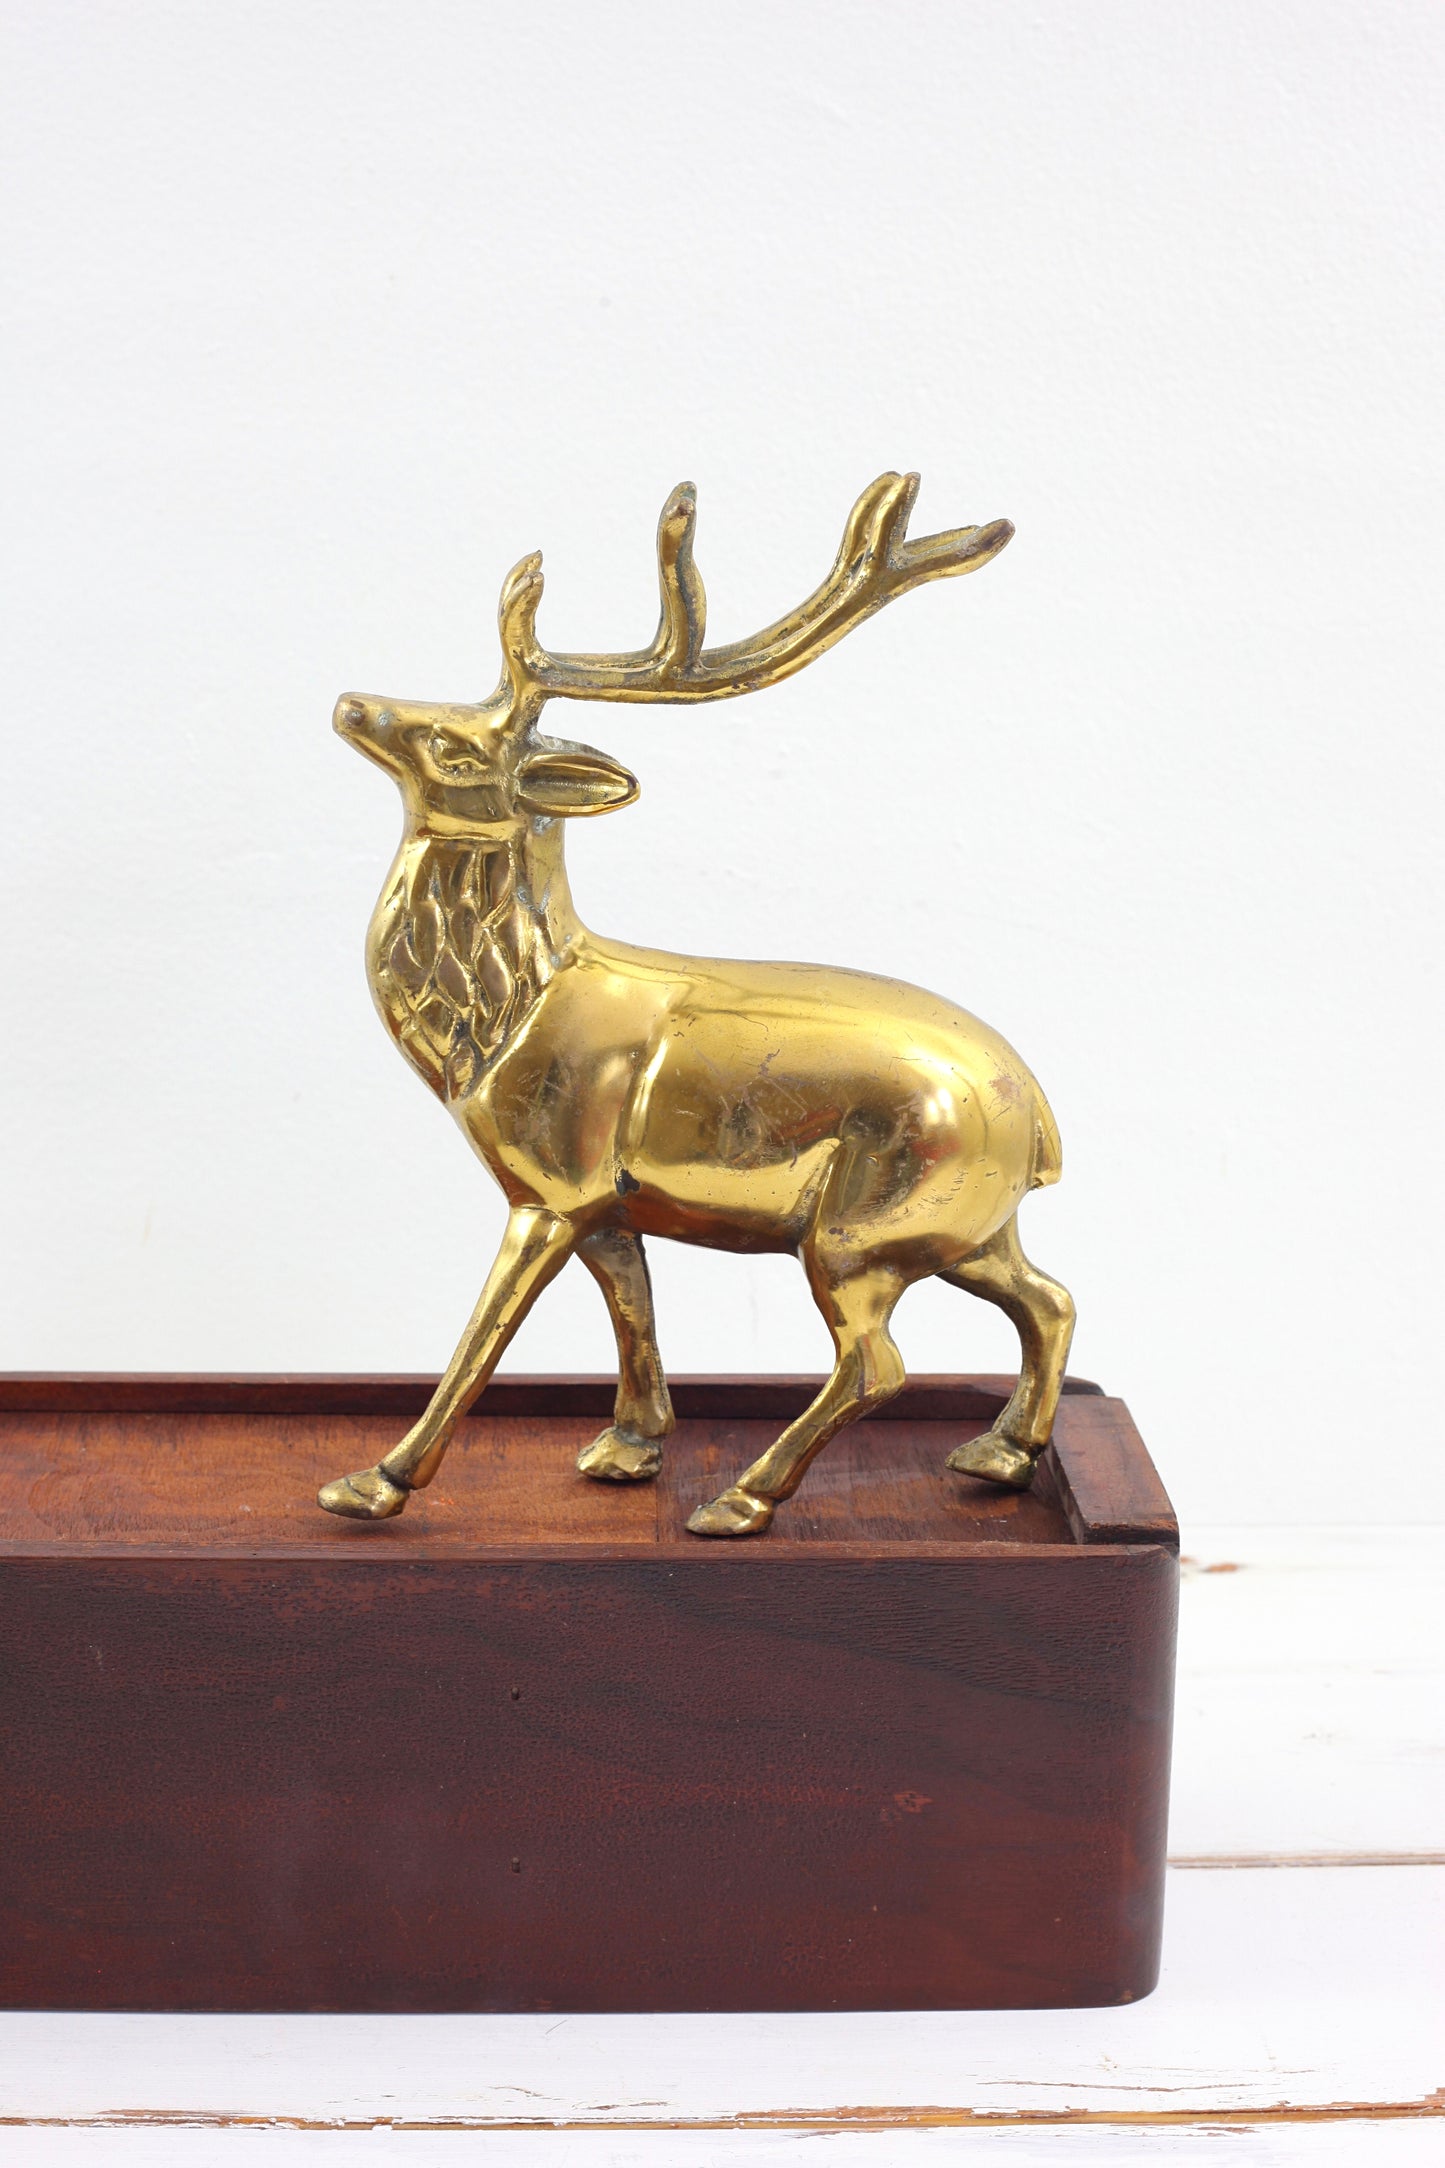 SOLD - Mid Century Modern Brass Reindeer